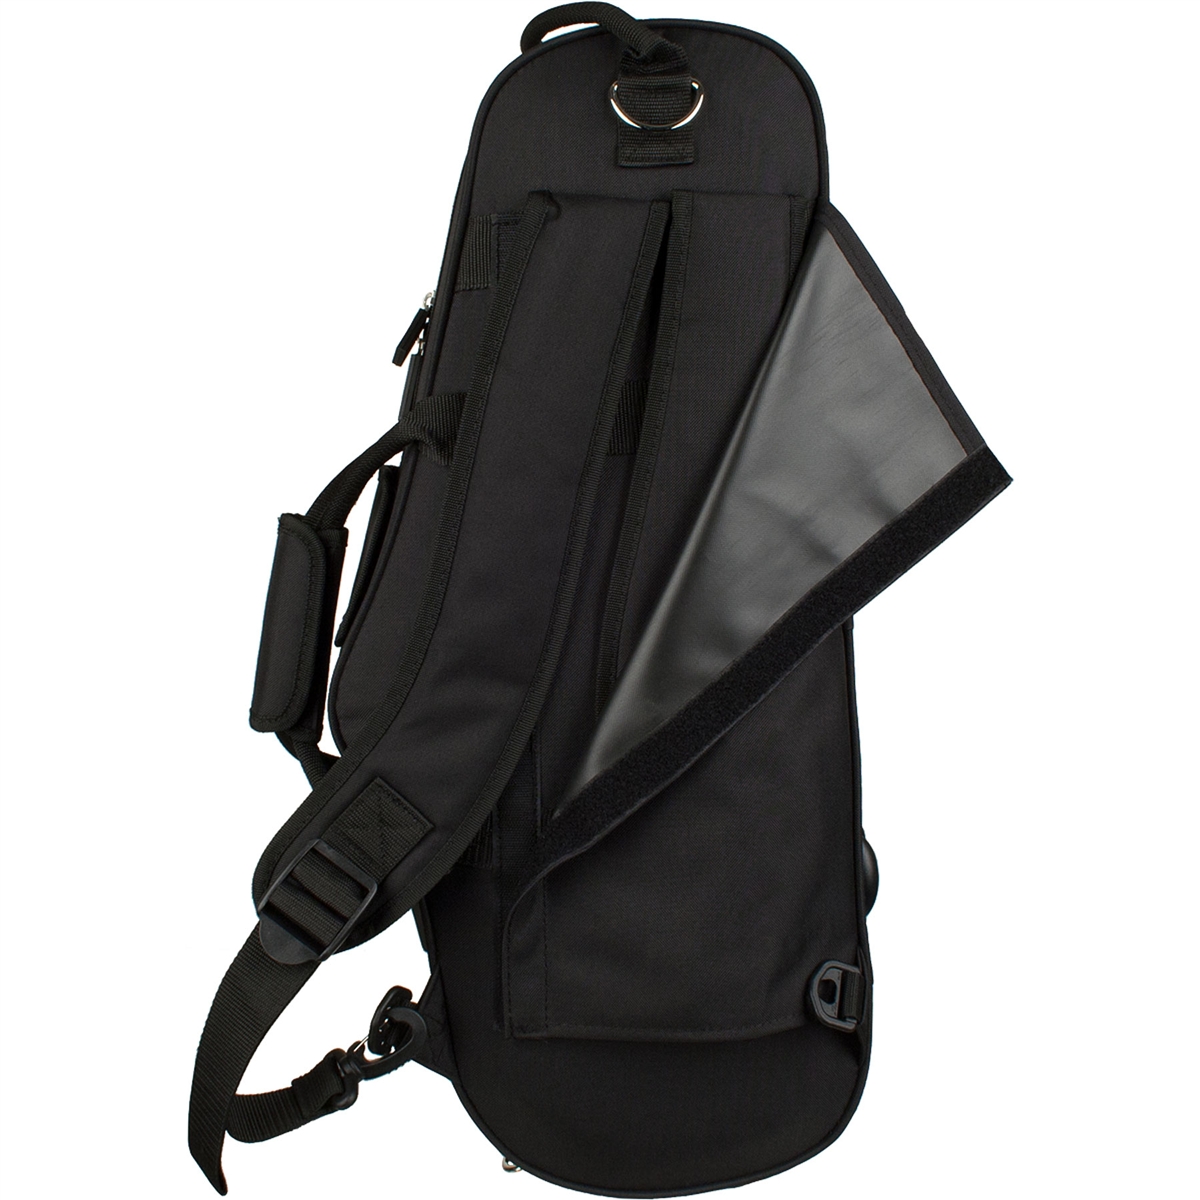 Protec MX304CT Koffer voor Altsaxofoon in Zwart